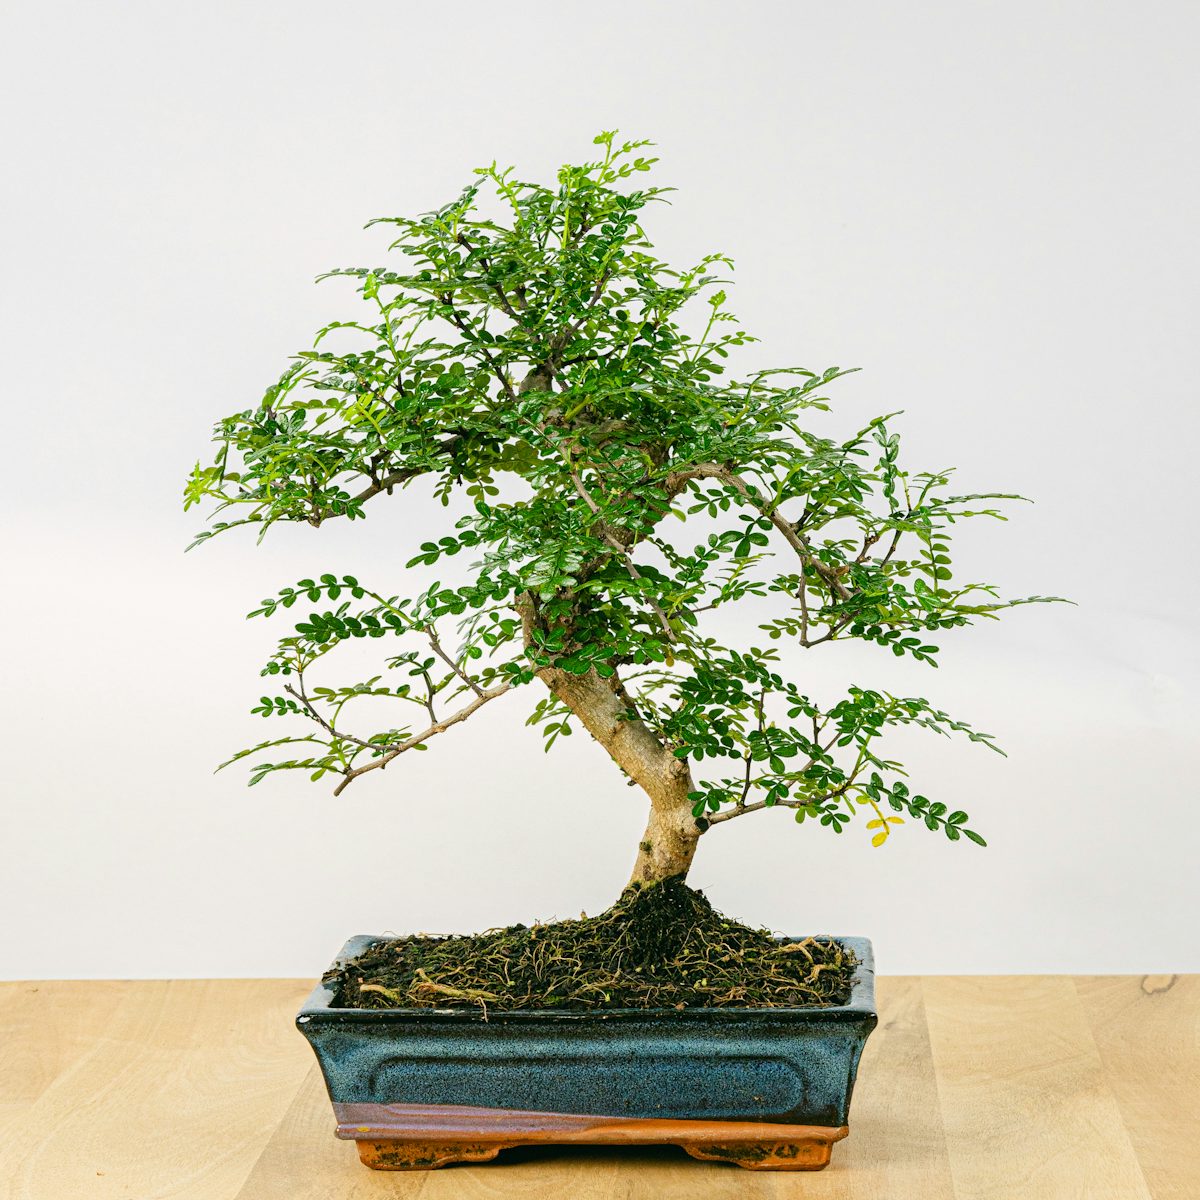 Bonsai Zanthoxylum Piperitum 10 Jahre